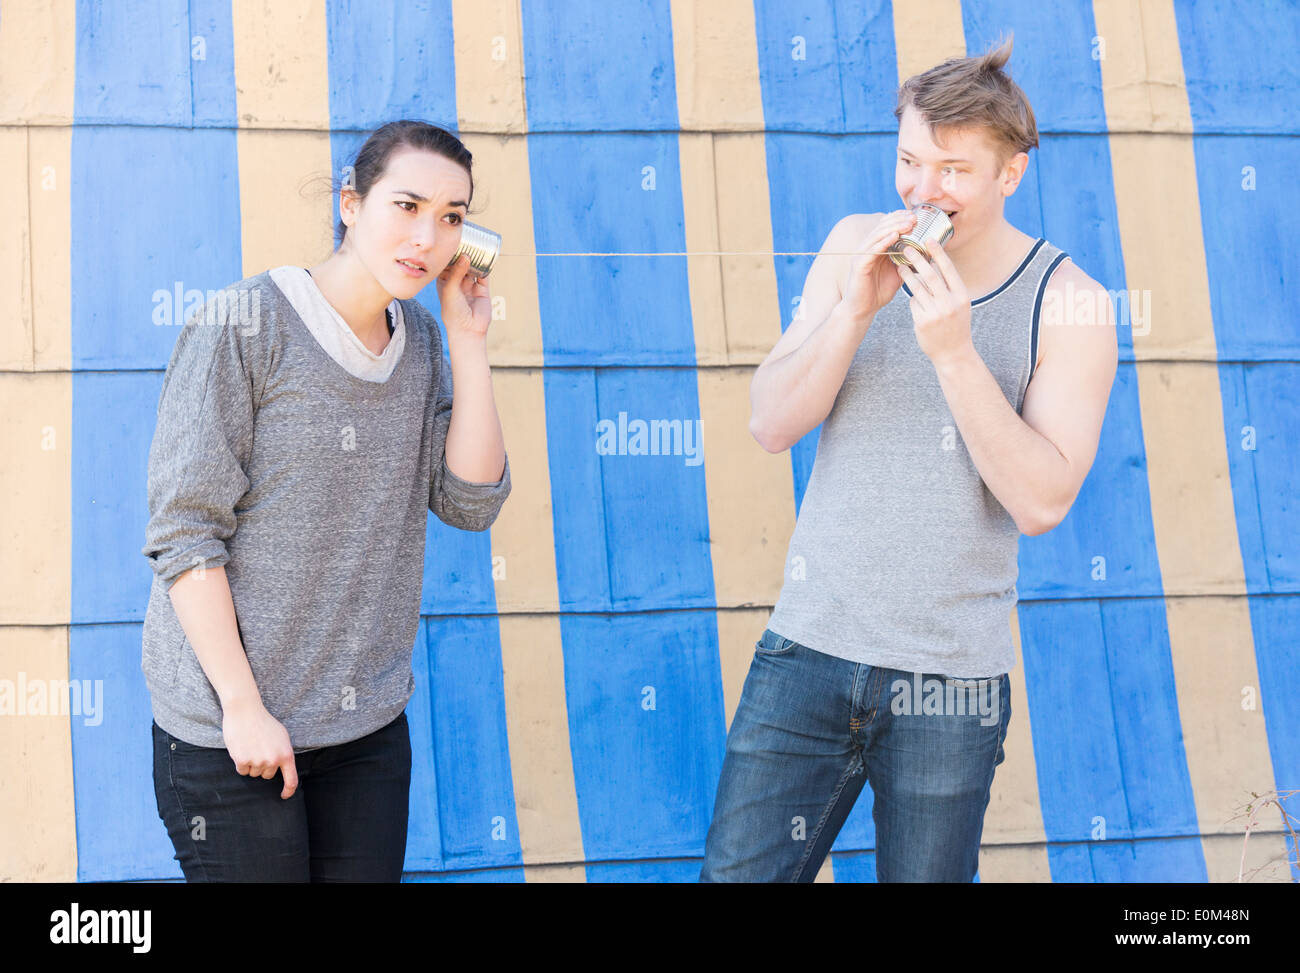 Junger Mann in einer Blechdose Telefon und Frau hören sprechen. Konzeptbild von Kommunikation und hören in einer Beziehung. Stockfoto